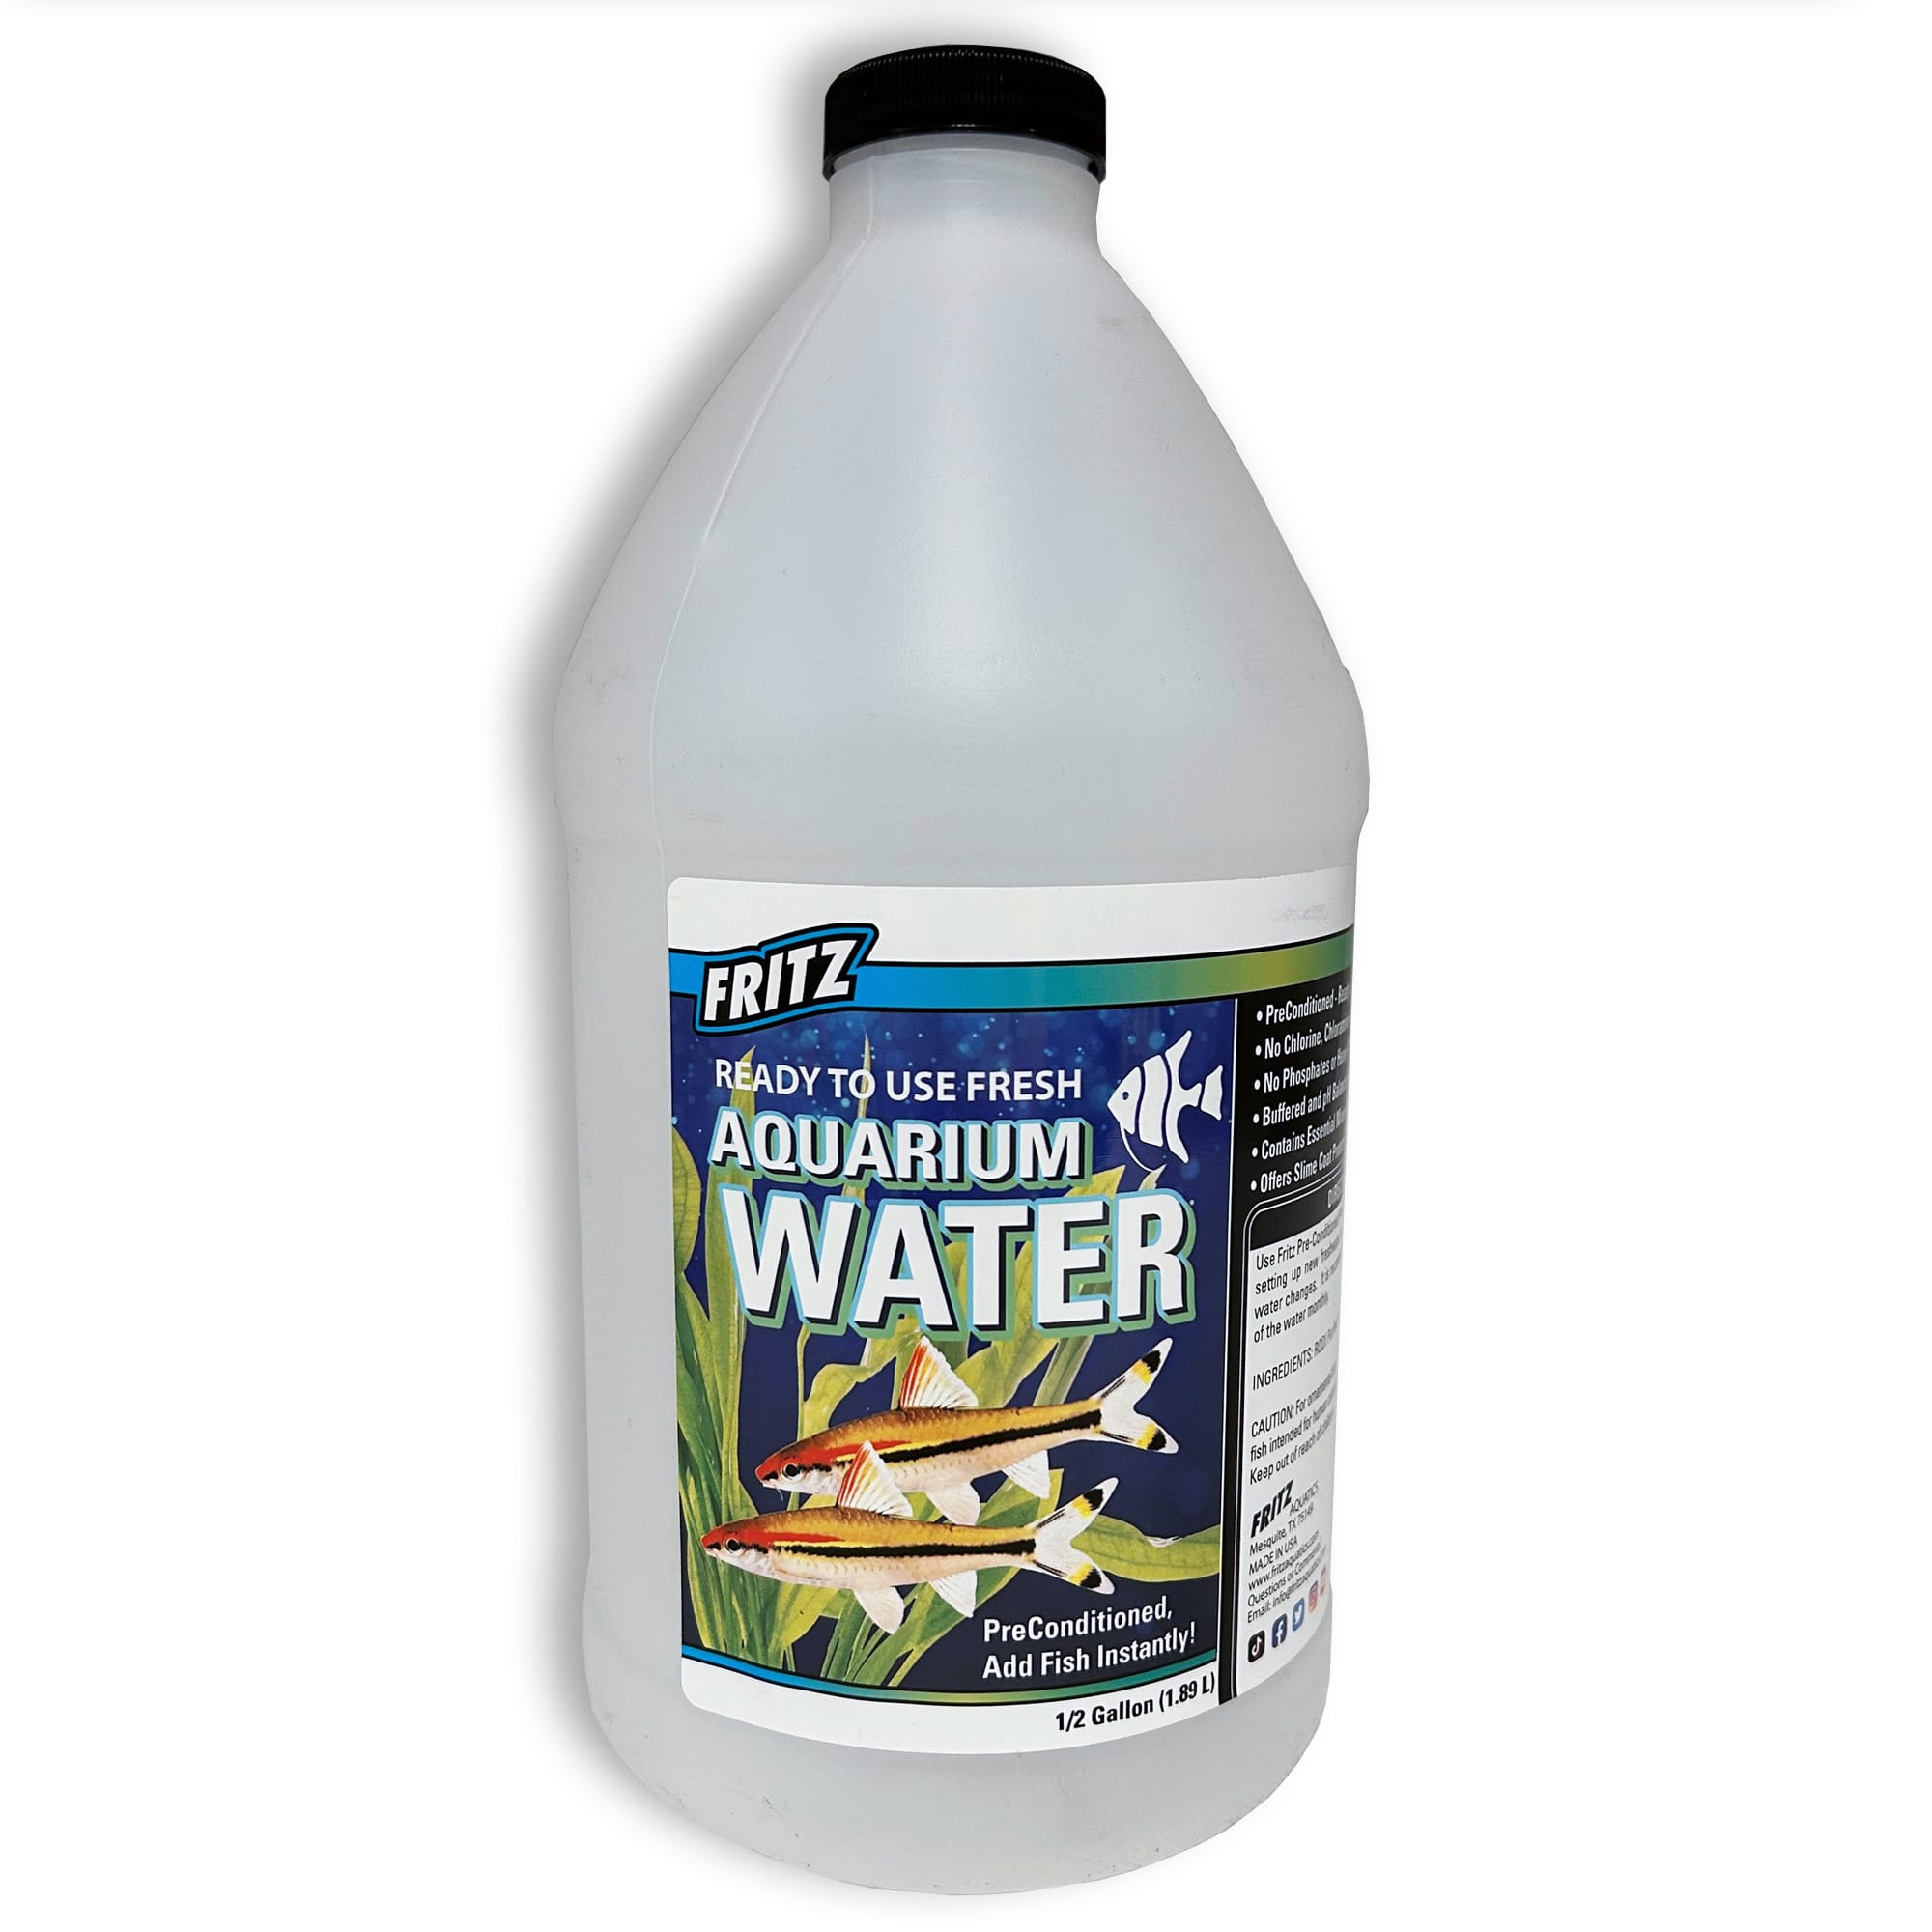 Fritz　Aquatics　Fresh　Petco　Aquarium　Water,　2.5　Gallon